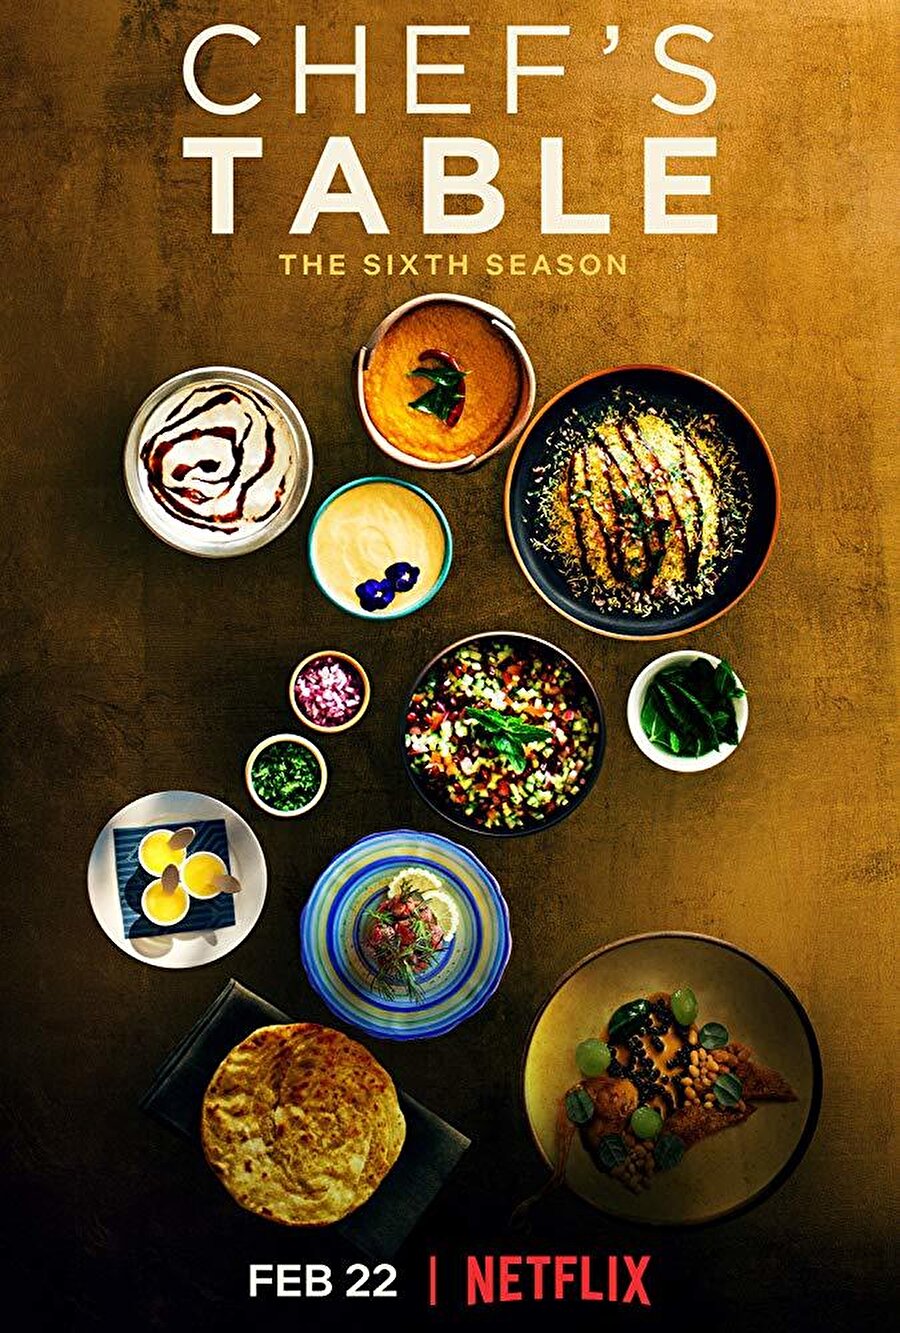 7. Chef’s Table

                                    
                                    
                                    
                                    
                                    Netflix'in en ünlü gastronomi programı diyebiliriz. Dünyanın farklı yerlerinden işinde usta olan şefleri Netflix ekranlarına getiriyor. Şefler kendi yemeklerinin hikayelerini, mutfağa olan yolculuklarını ve yemeğe olan tutkularının nedenlerini anlatıyor, ustalıklarının sırlarını izleyicilere aktarıyor.
                                
                                
                                
                                
                                